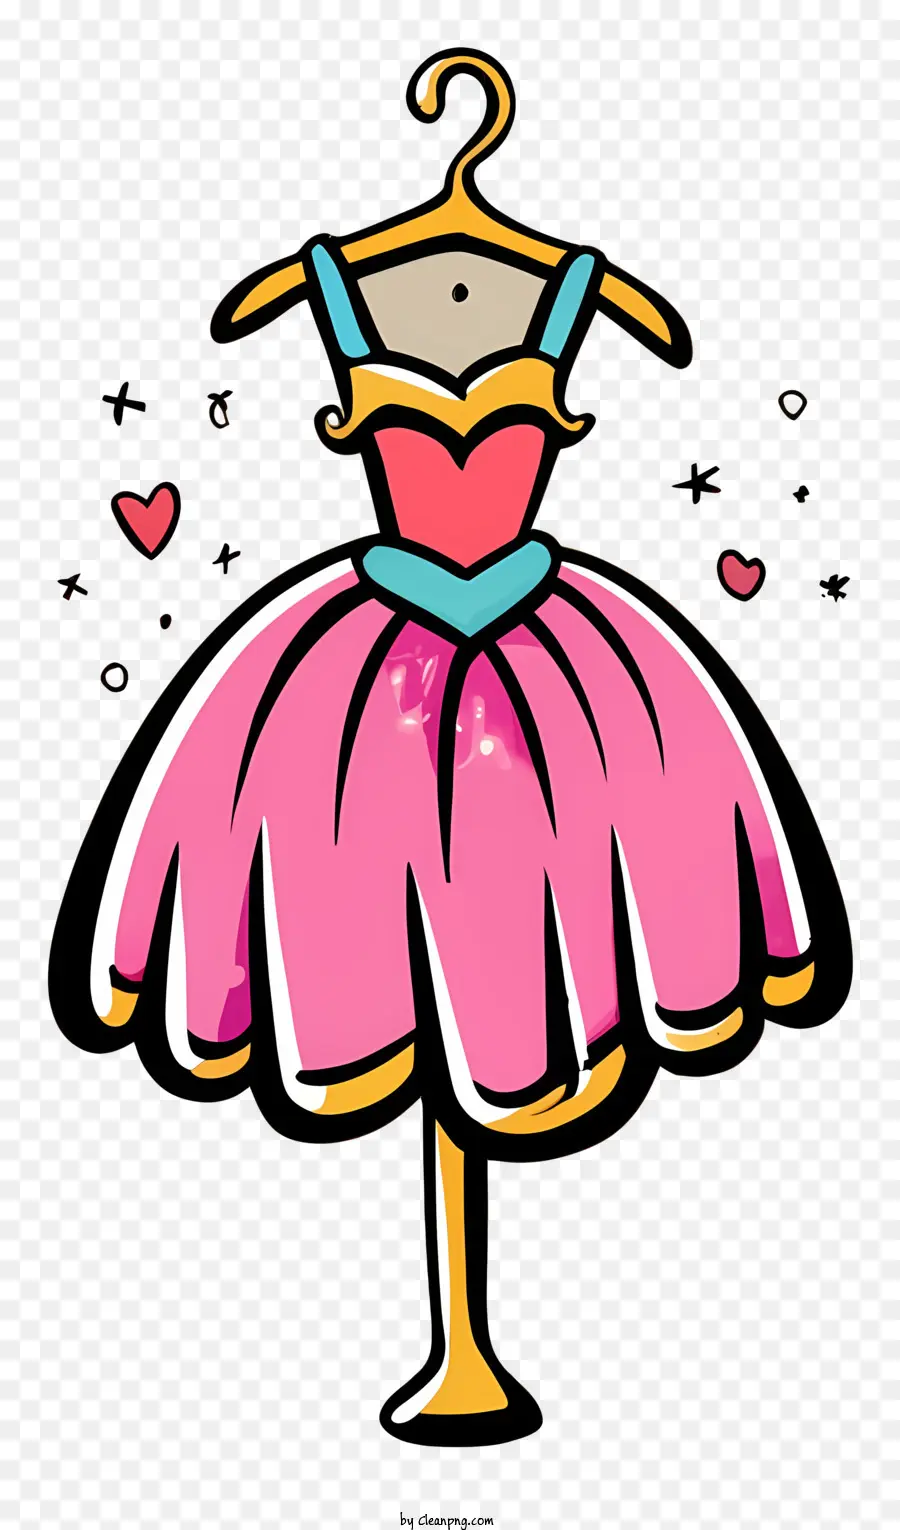 Abito rosa cuori sul vestito abito in stile ballerina vestito da colletto in pizzo blu vestito in cintura - Abito da ballerina rosa con accenti blu su stand